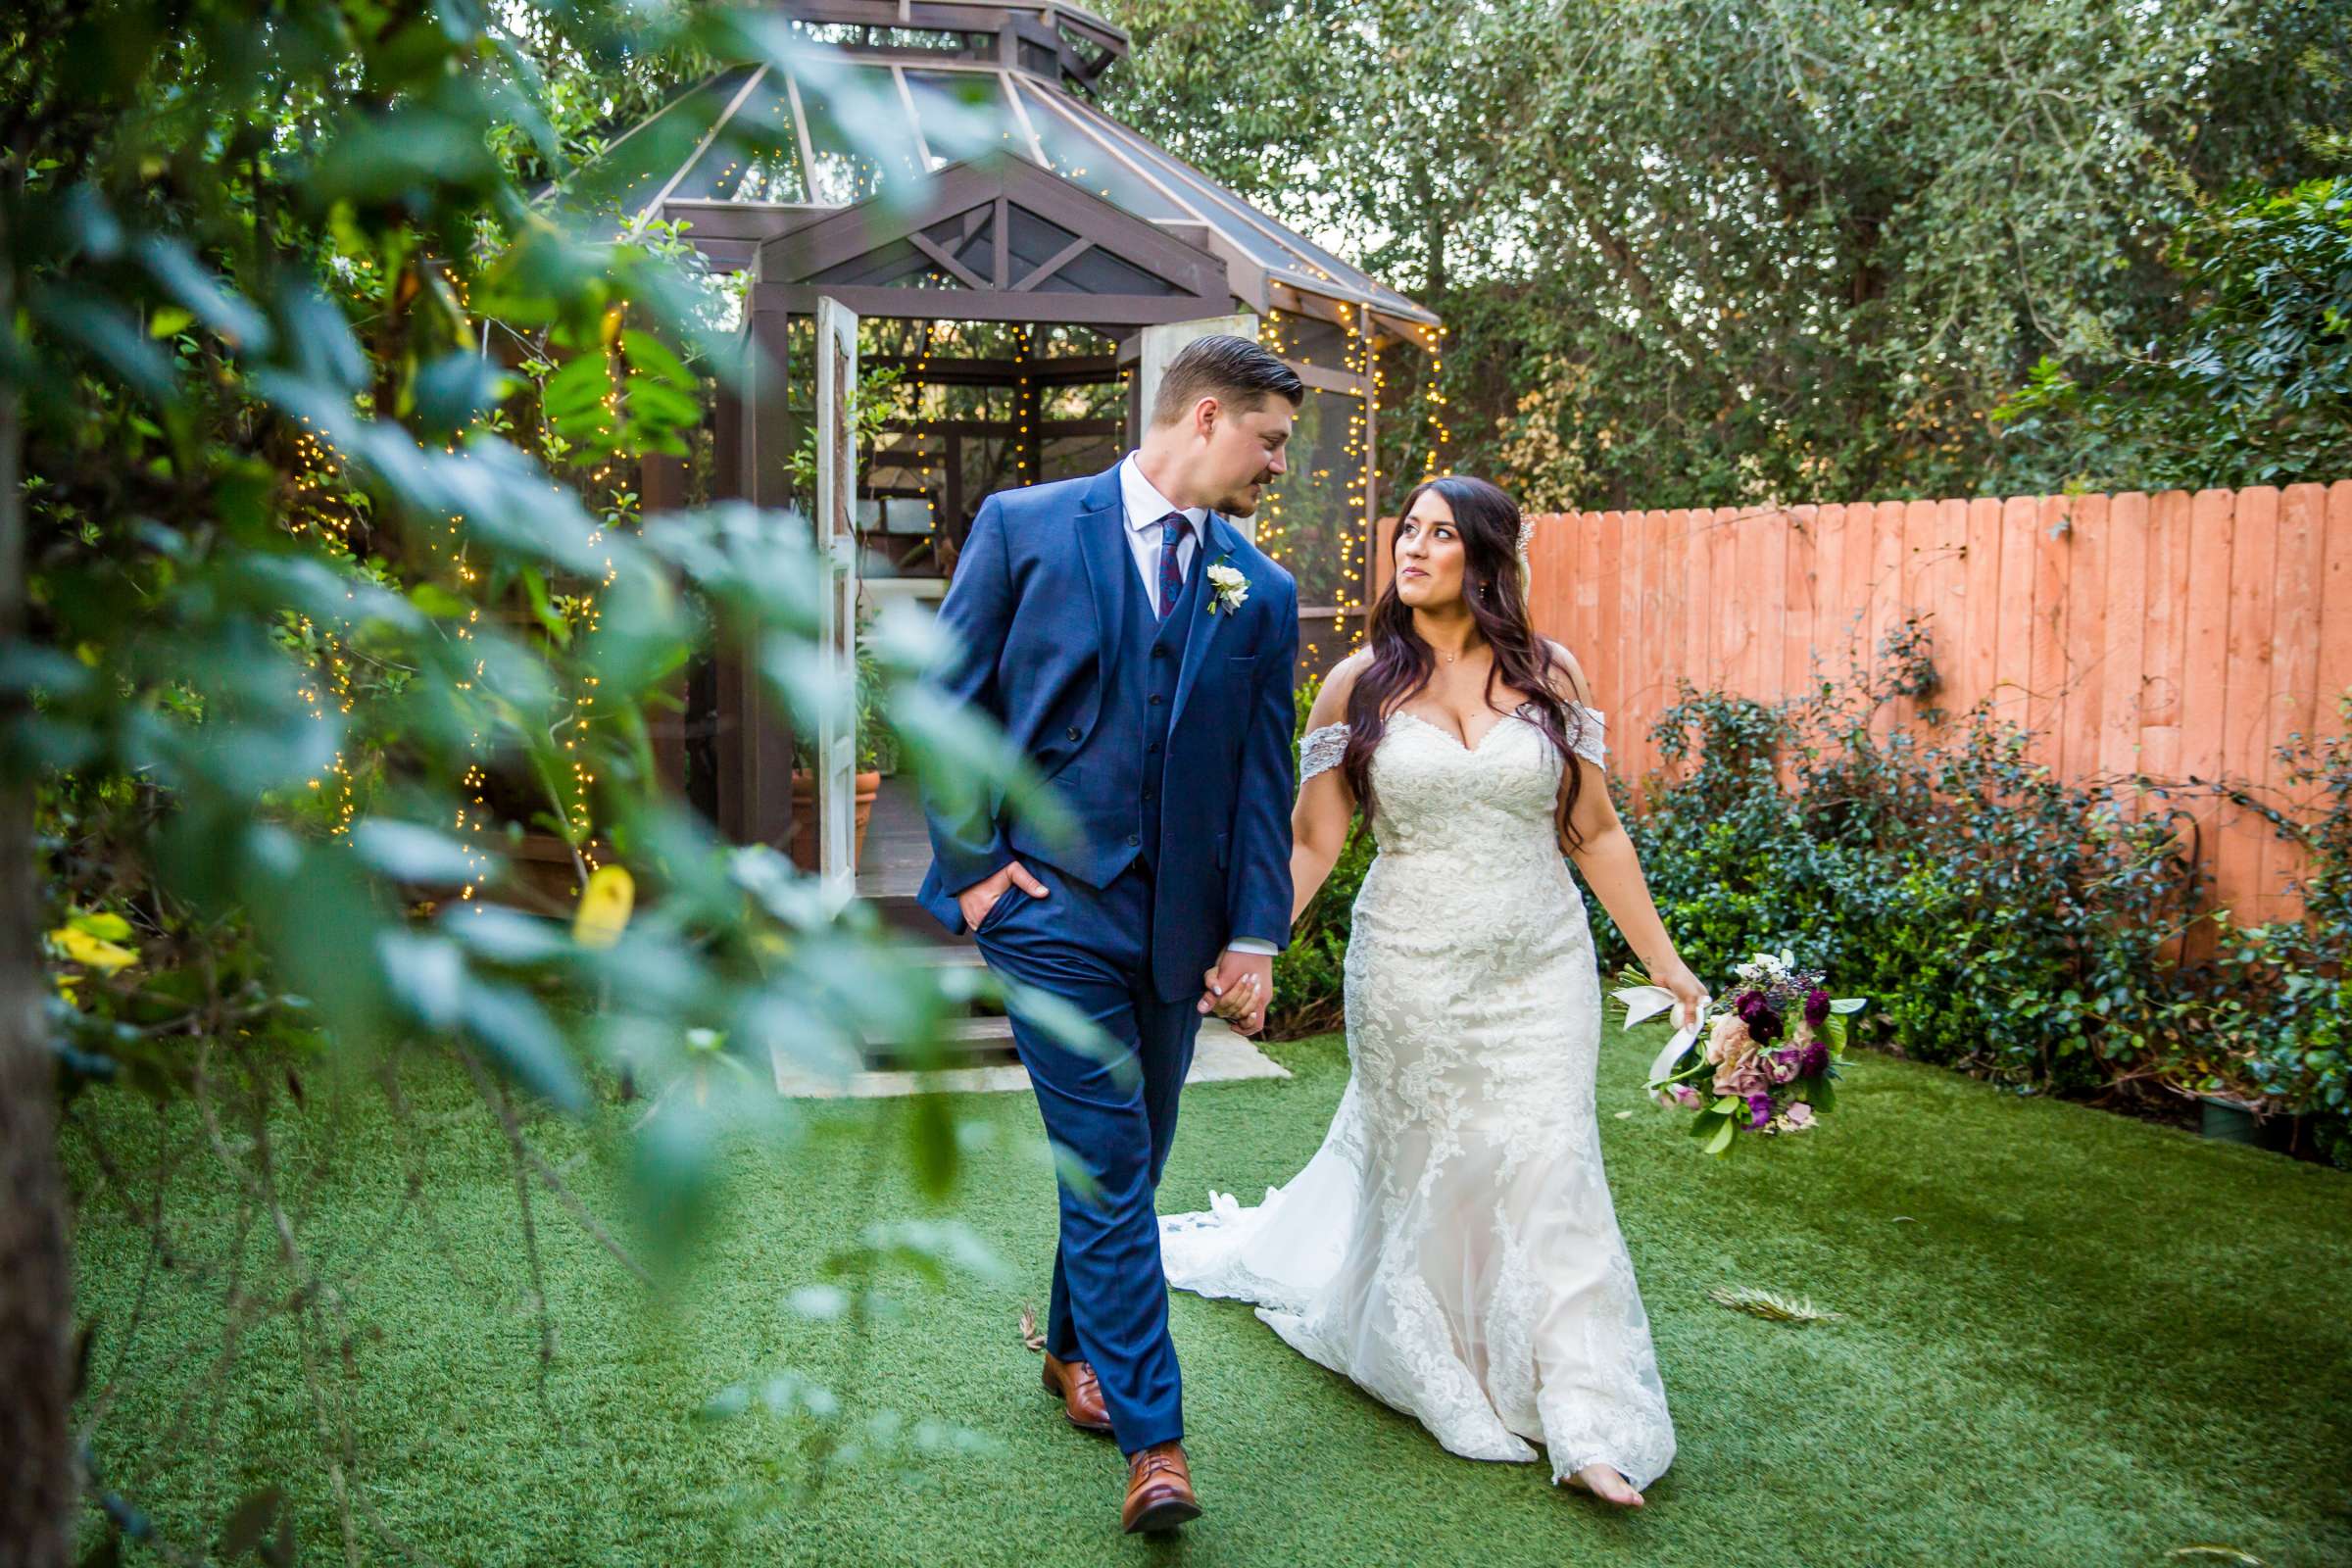 Twin Oaks House & Gardens Wedding Estate Wedding, Stephanie and Ilija Wedding Photo #88 by True Photography